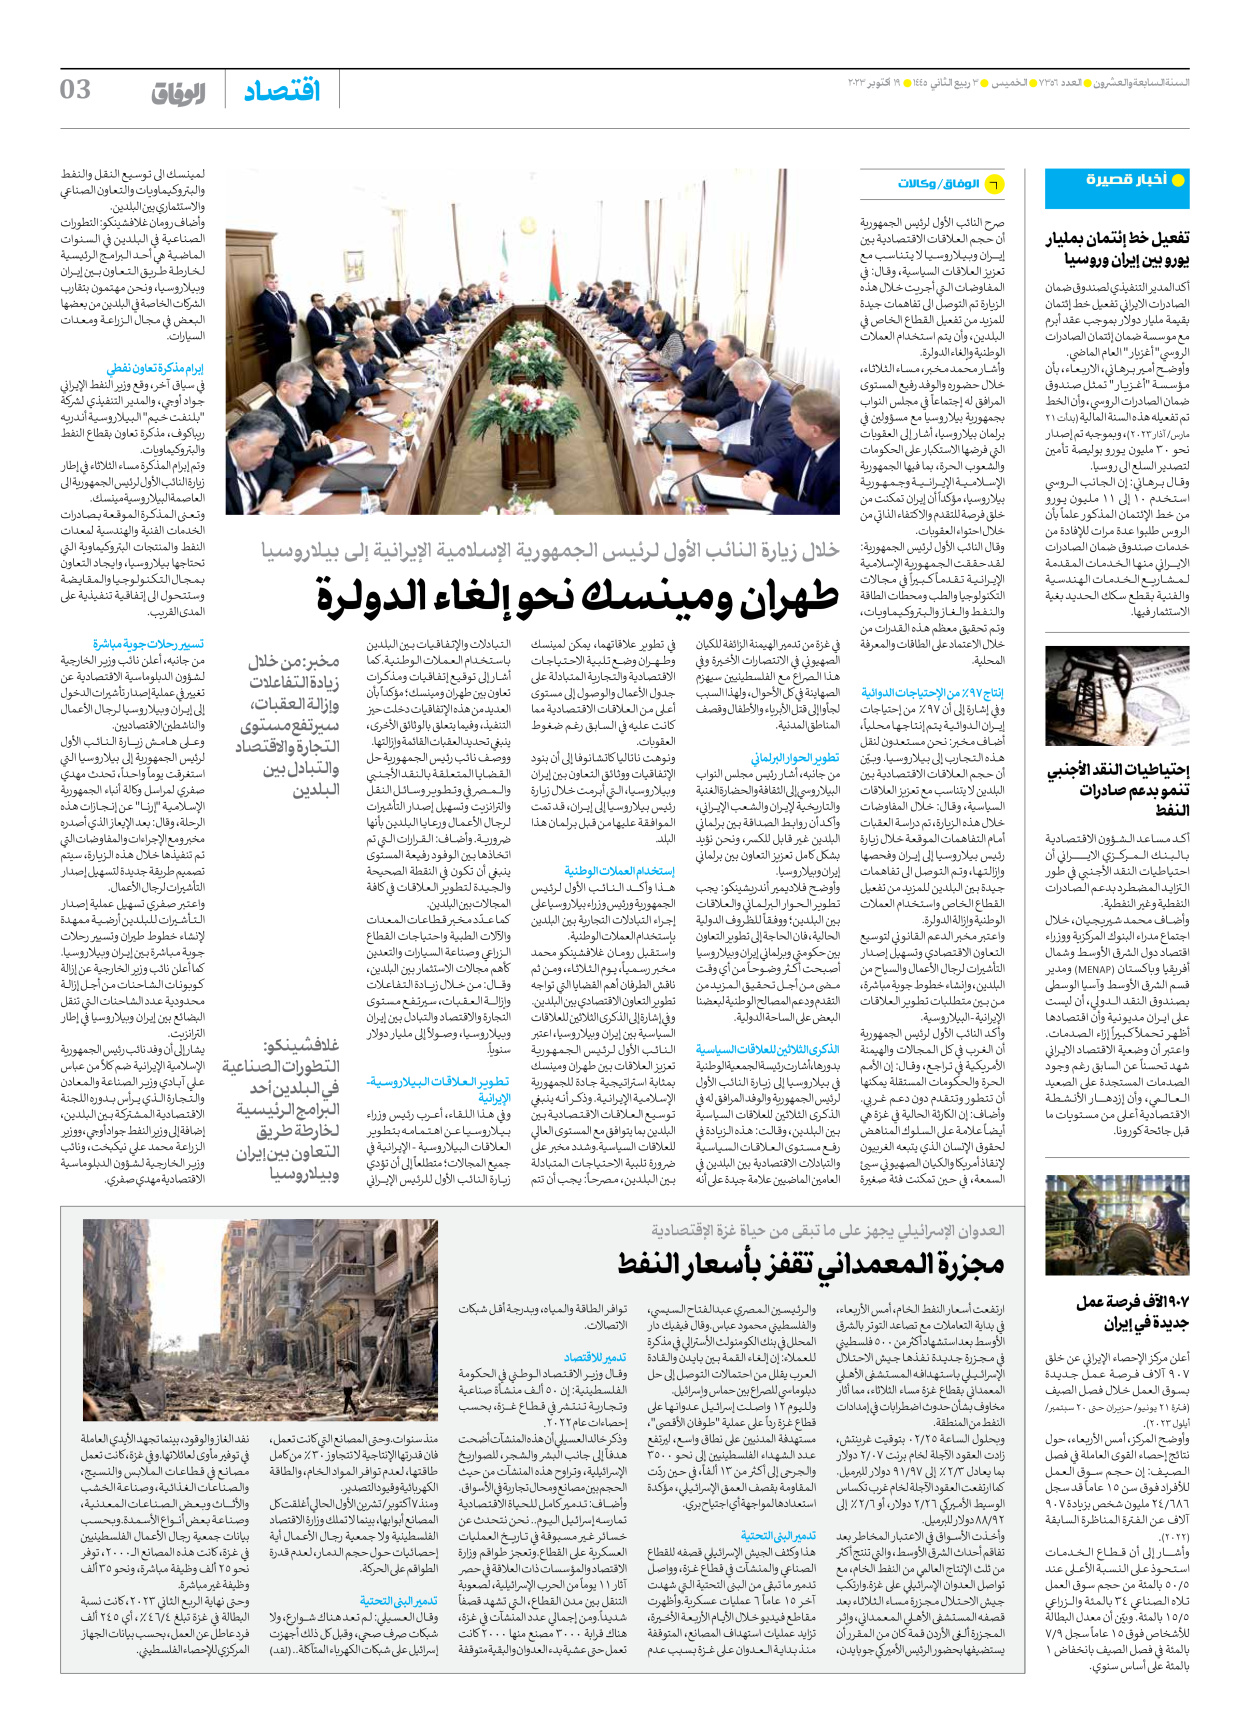 صحیفة ایران الدولیة الوفاق - العدد سبعة آلاف وثلاثمائة وستة وخمسون - ١٩ أكتوبر ٢٠٢٣ - الصفحة ۳